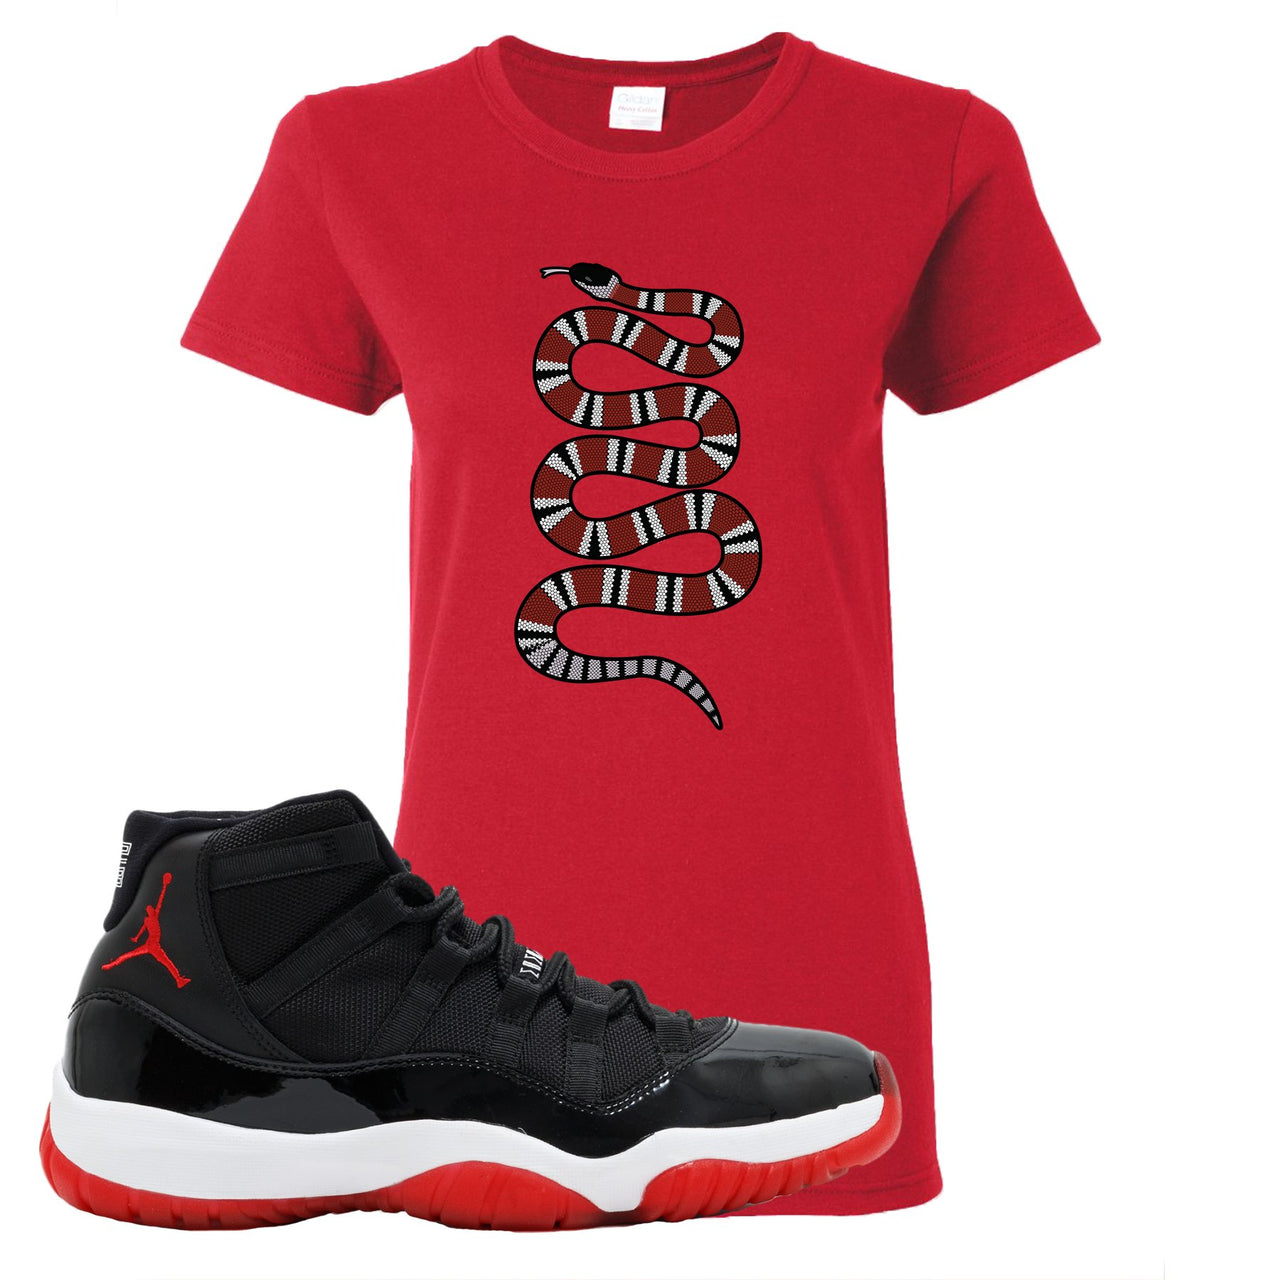 Jordan 11 Bred Coiled Snake Red Sneaker Hook Up Women's T-Shirt